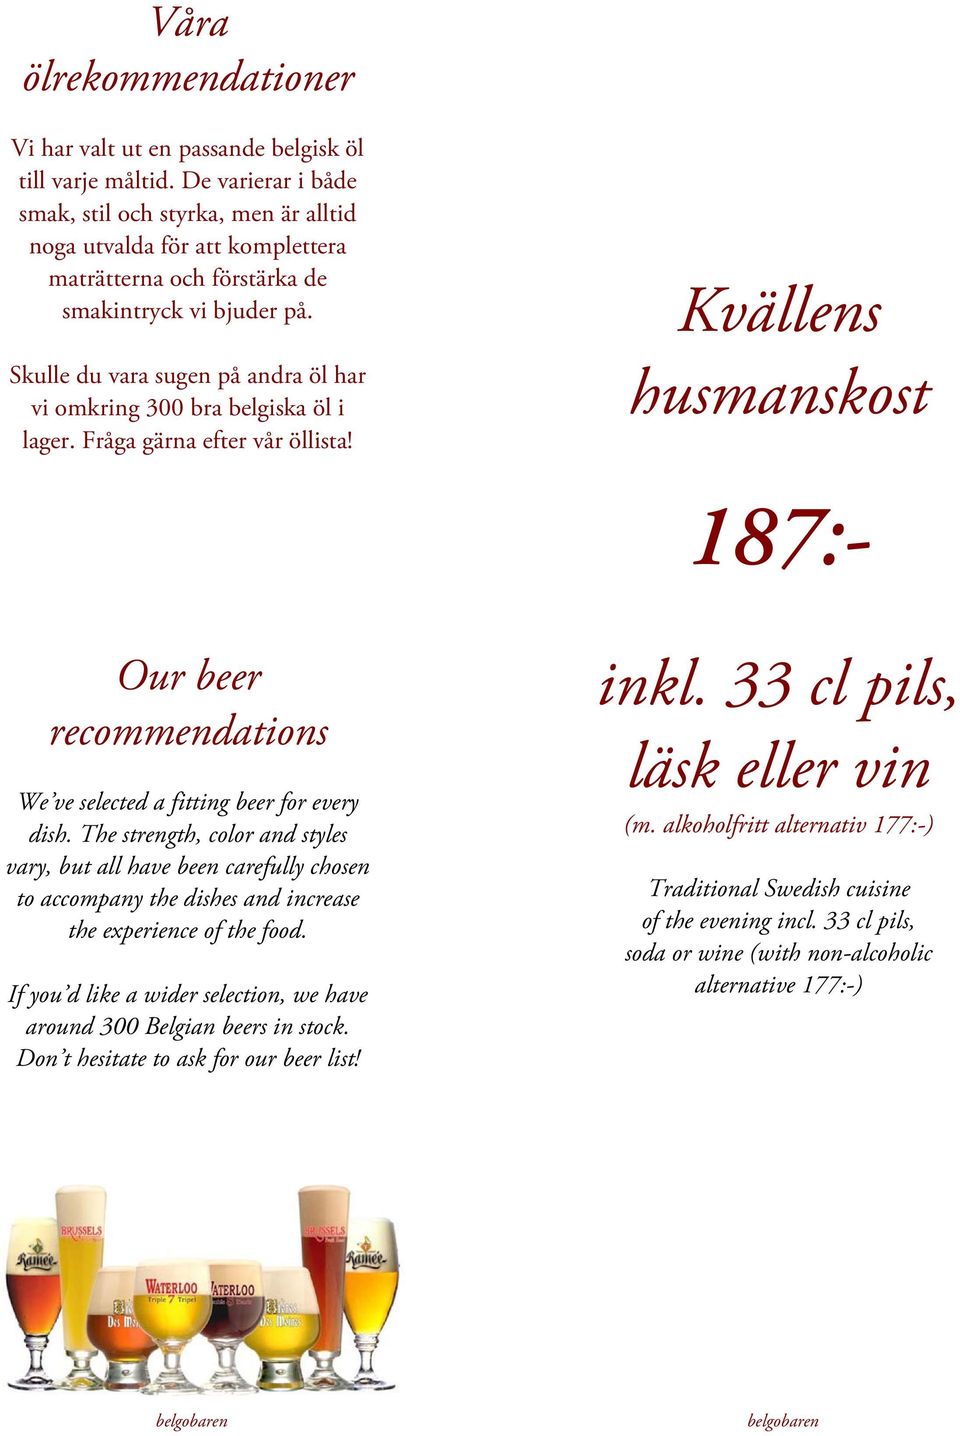 Skulle du vara sugen på andra öl har vi omkring 300 bra belgiska öl i lager. Fråga gärna efter vår öllista!